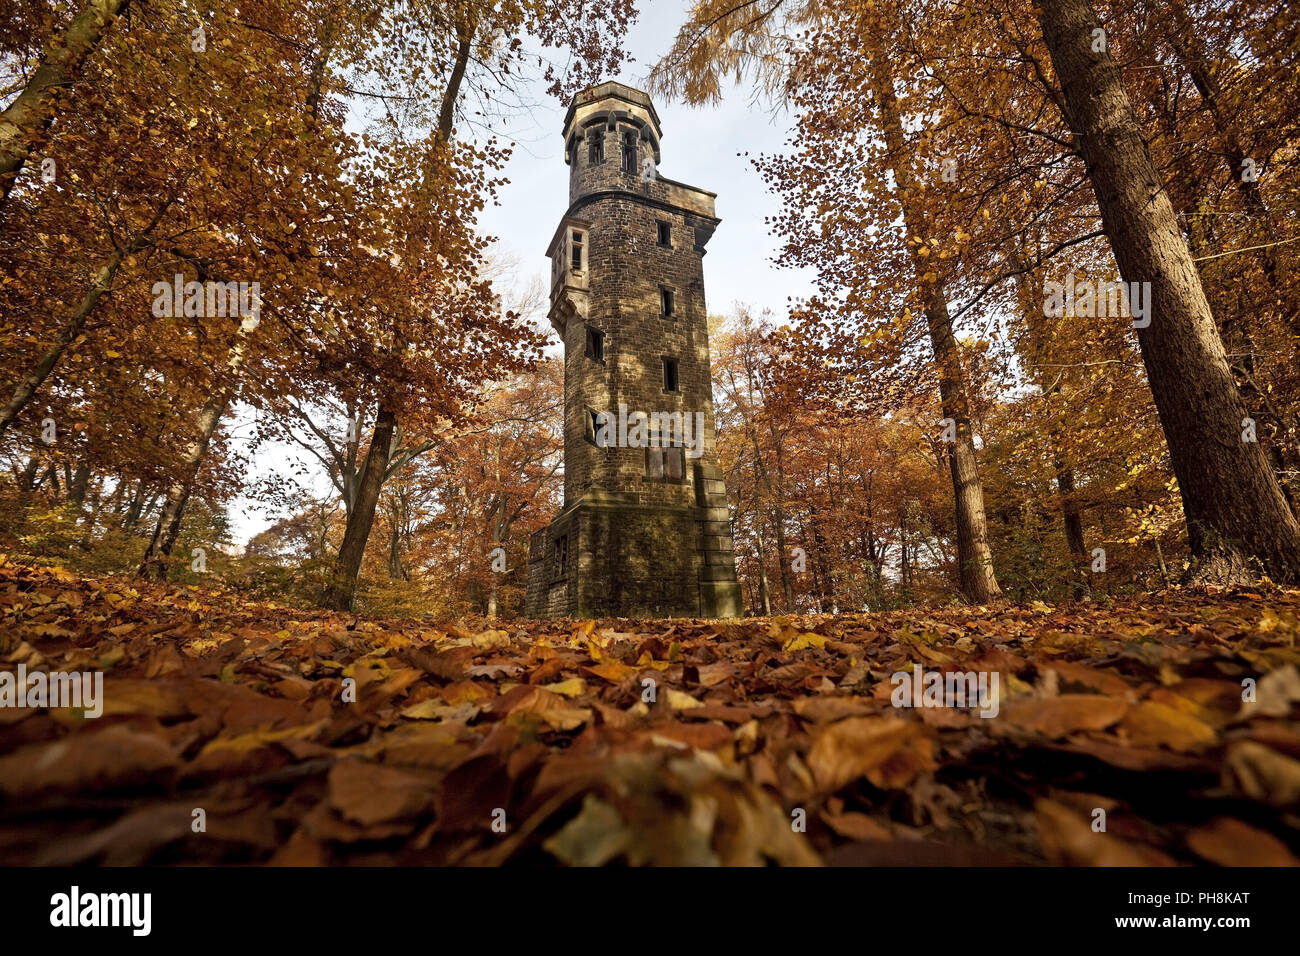 Von-der-Heydt-Turm, autumn, Wuppertal Stock Photo